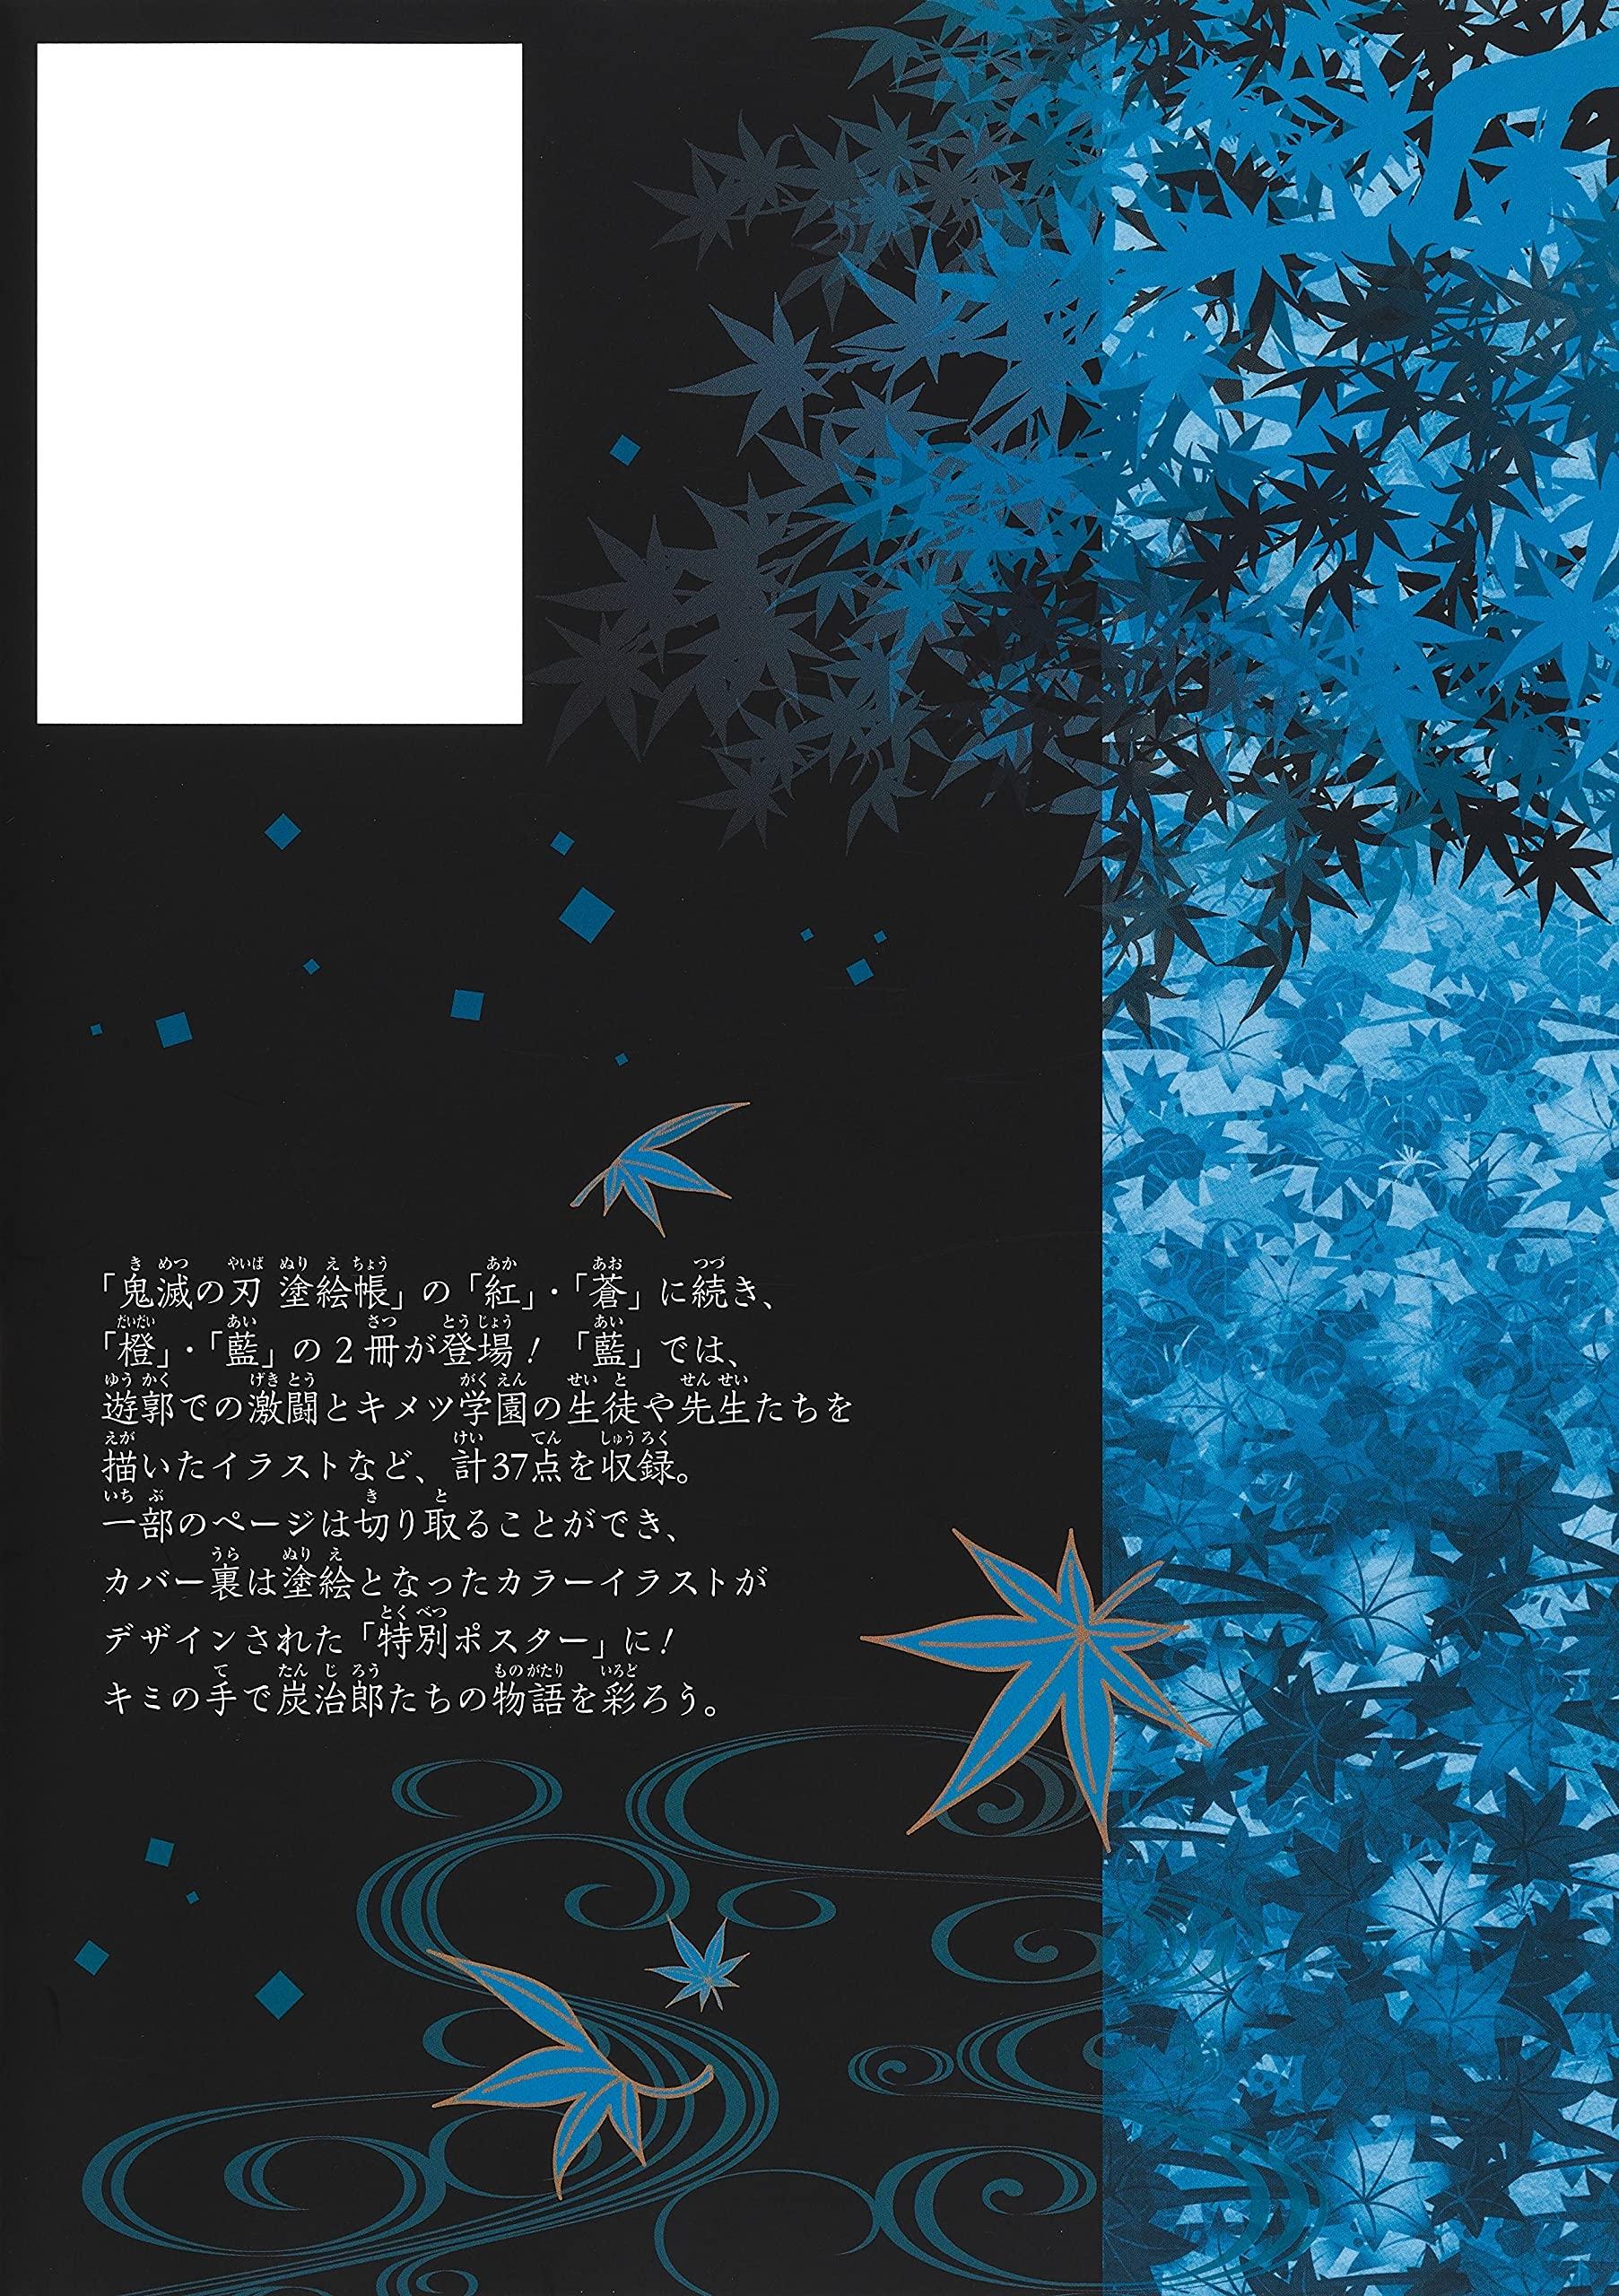 鬼滅の刃 塗絵帳 - 藍 - Demon Slayer: Kimetsu No Yaiba Paint Book - Ai